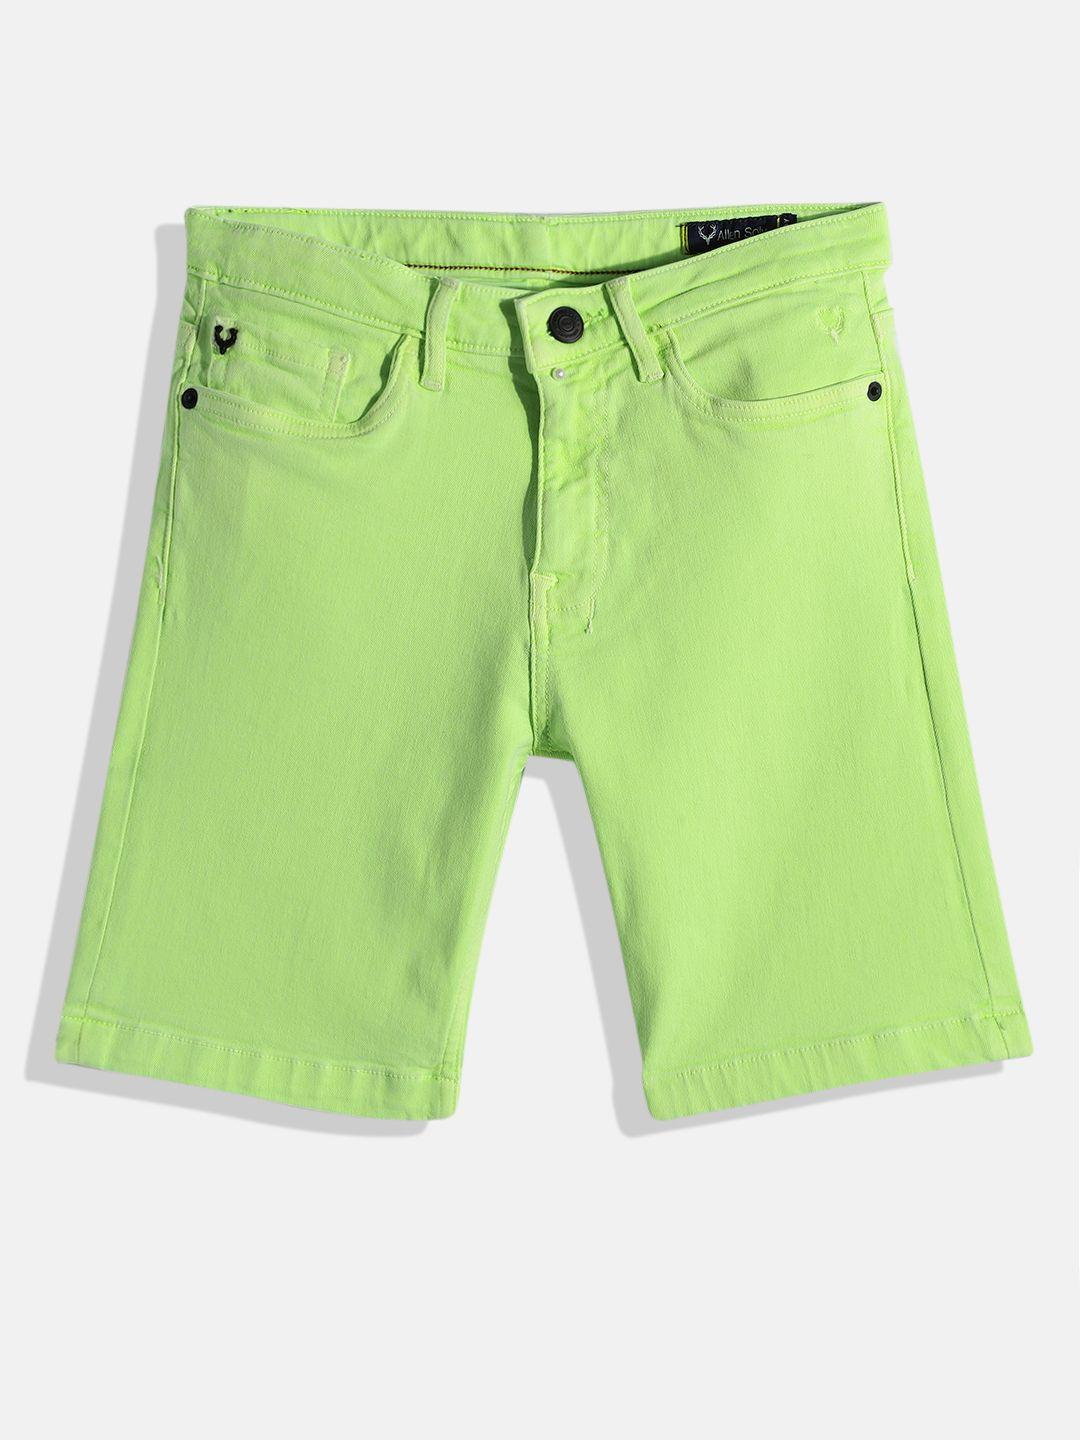 allen solly junior boys green shorts